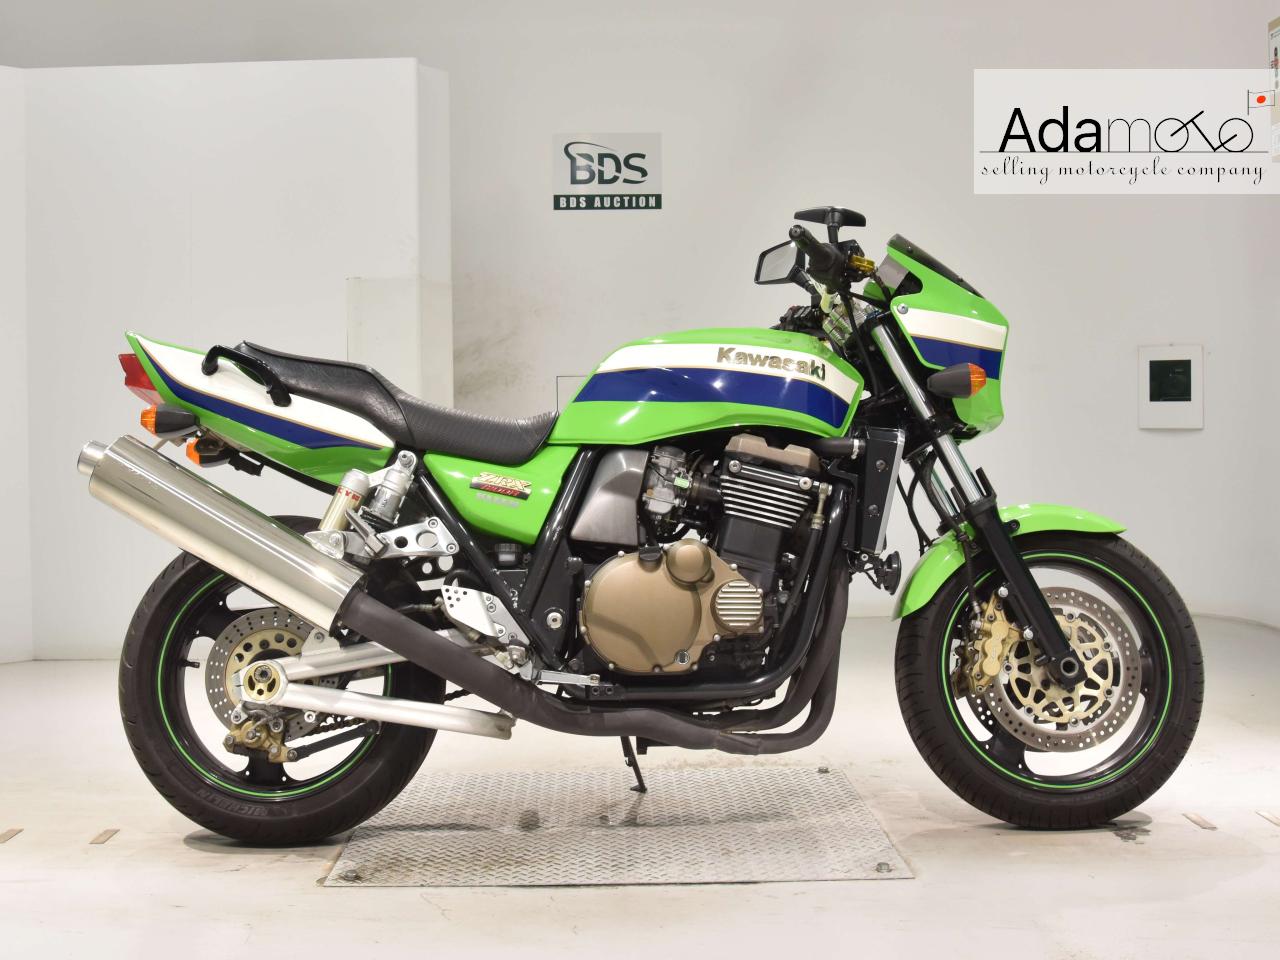 Kawasaki ZRX1200R - Adamoto - Motorcycles from Japan